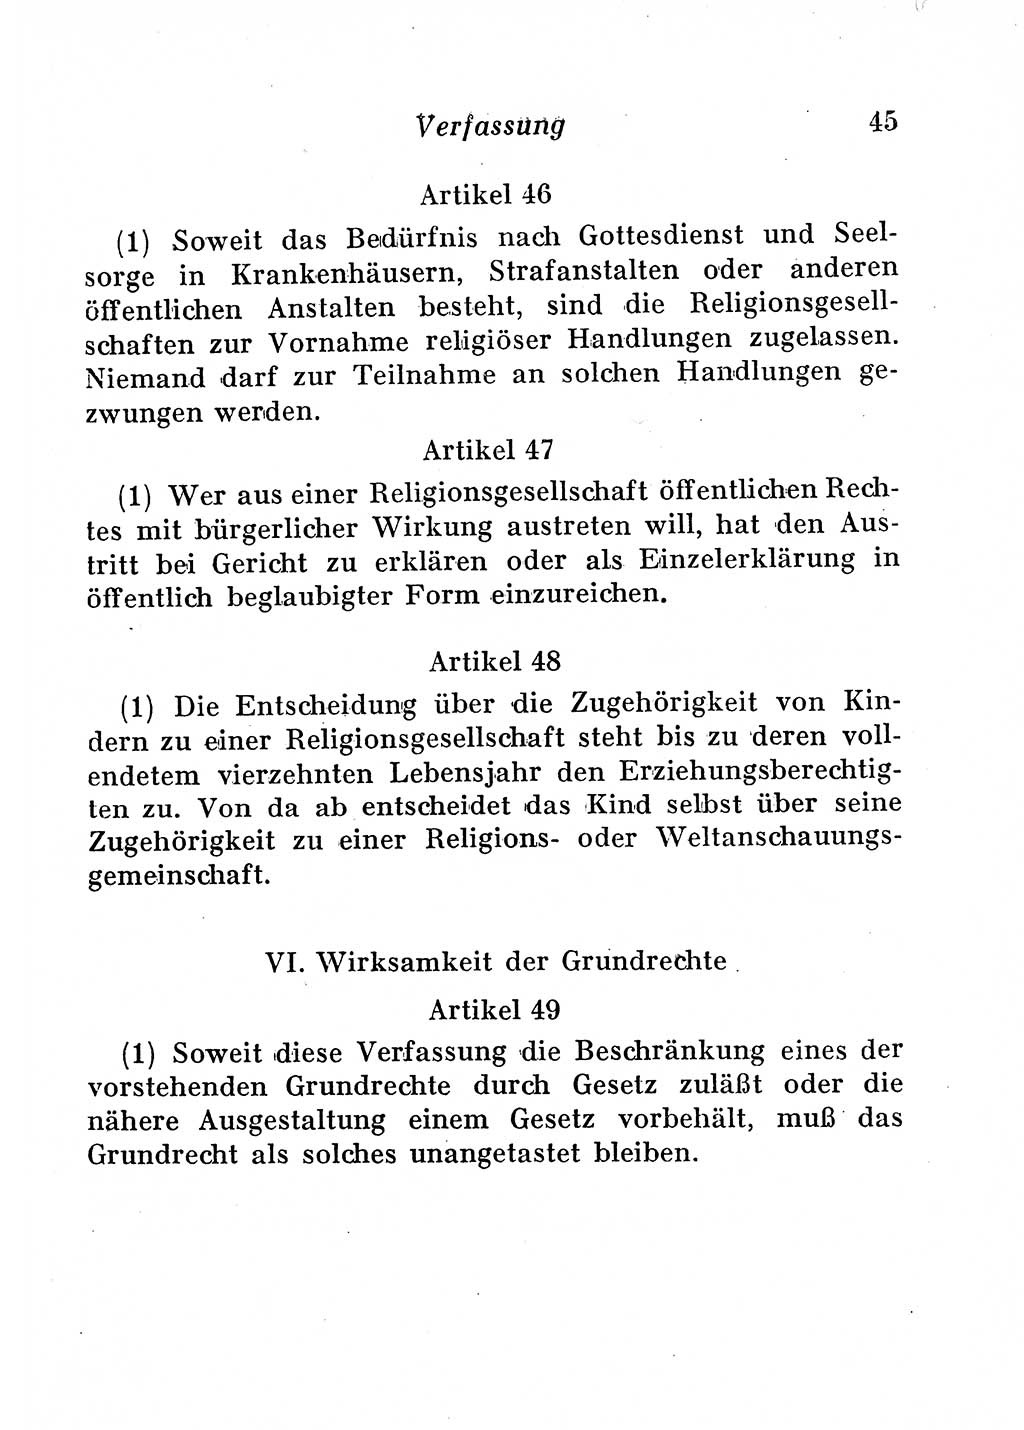 Staats- und verwaltungsrechtliche Gesetze der Deutschen Demokratischen Republik (DDR) 1958, Seite 45 (StVerwR Ges. DDR 1958, S. 45)